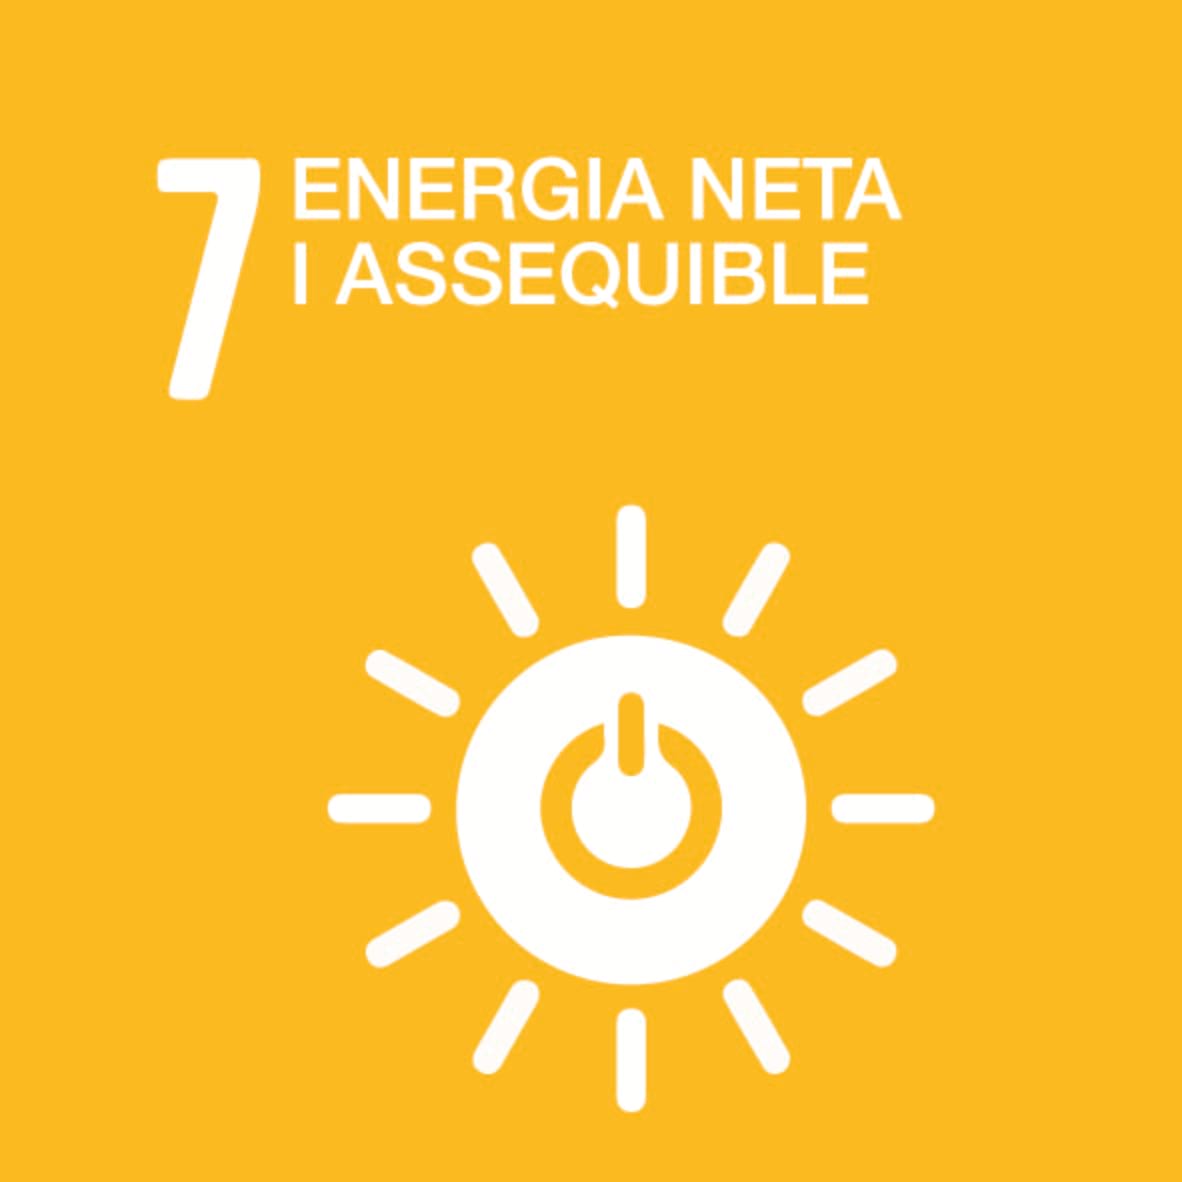 7. Energia neta i assequible